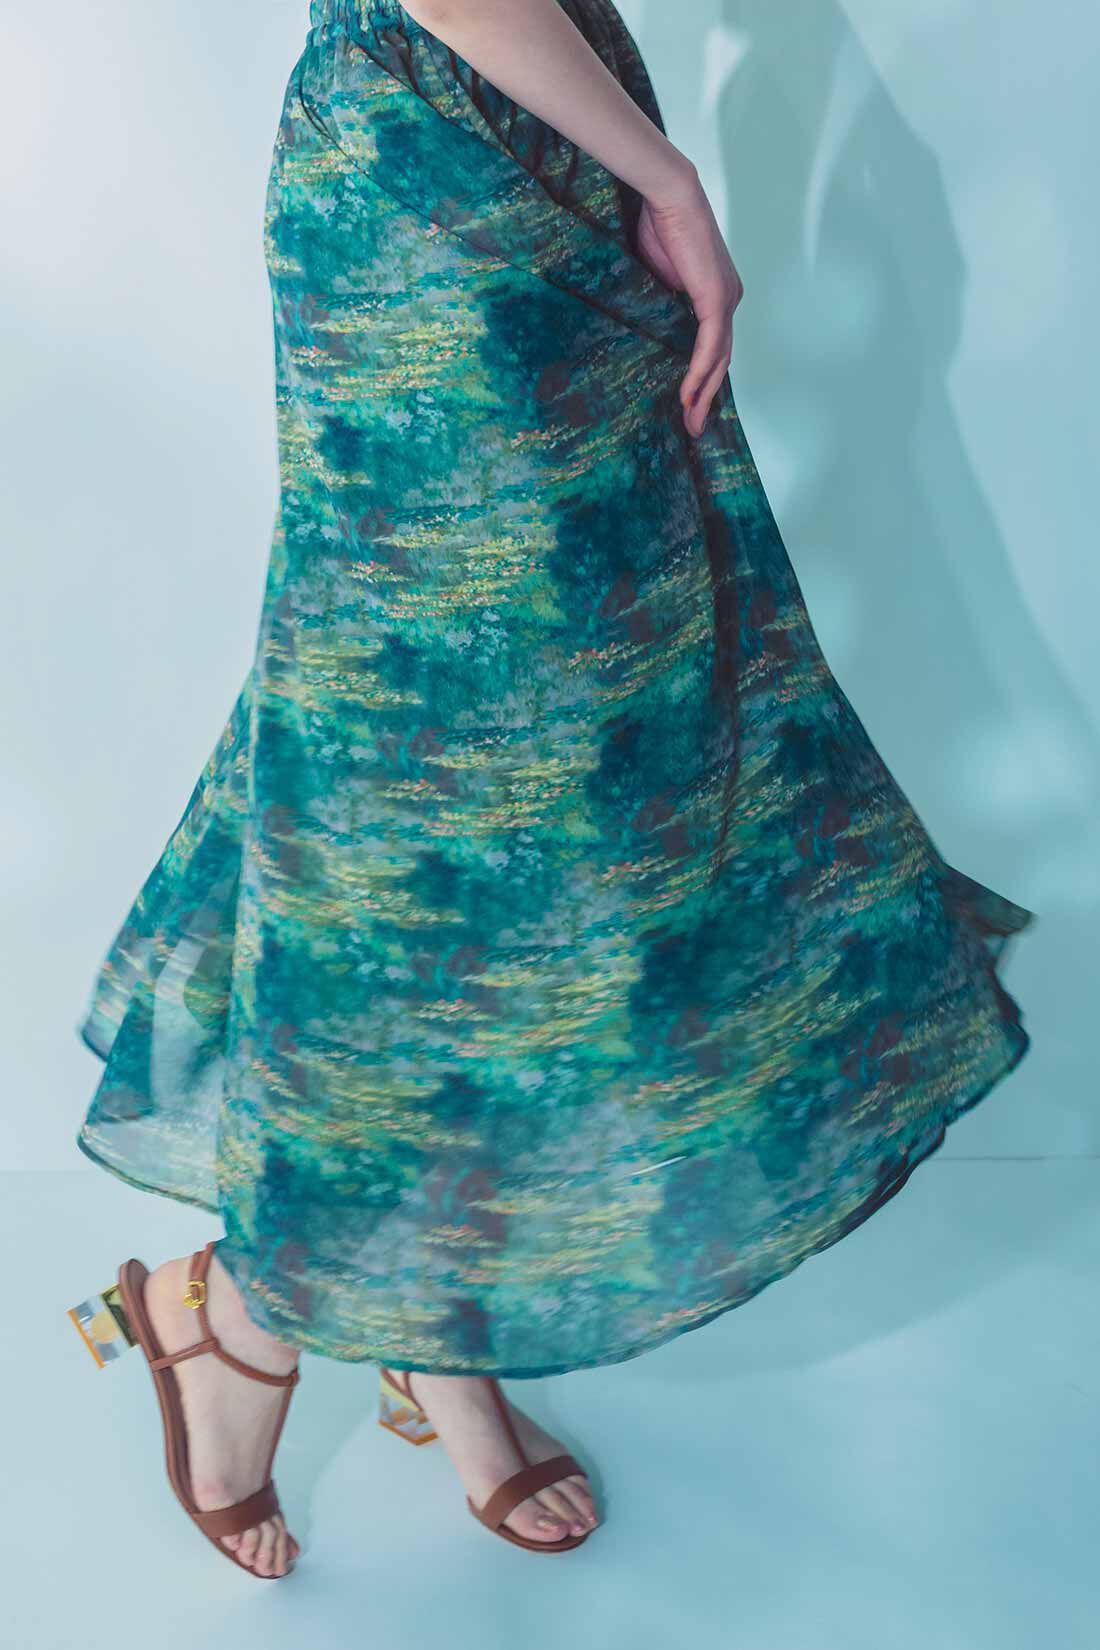 IEDIT|IEDIT[イディット]　モネの睡蓮をまとうシフォンスカート〈グリーン〉|※着用イメージです。お届けするカラーとは異なります。